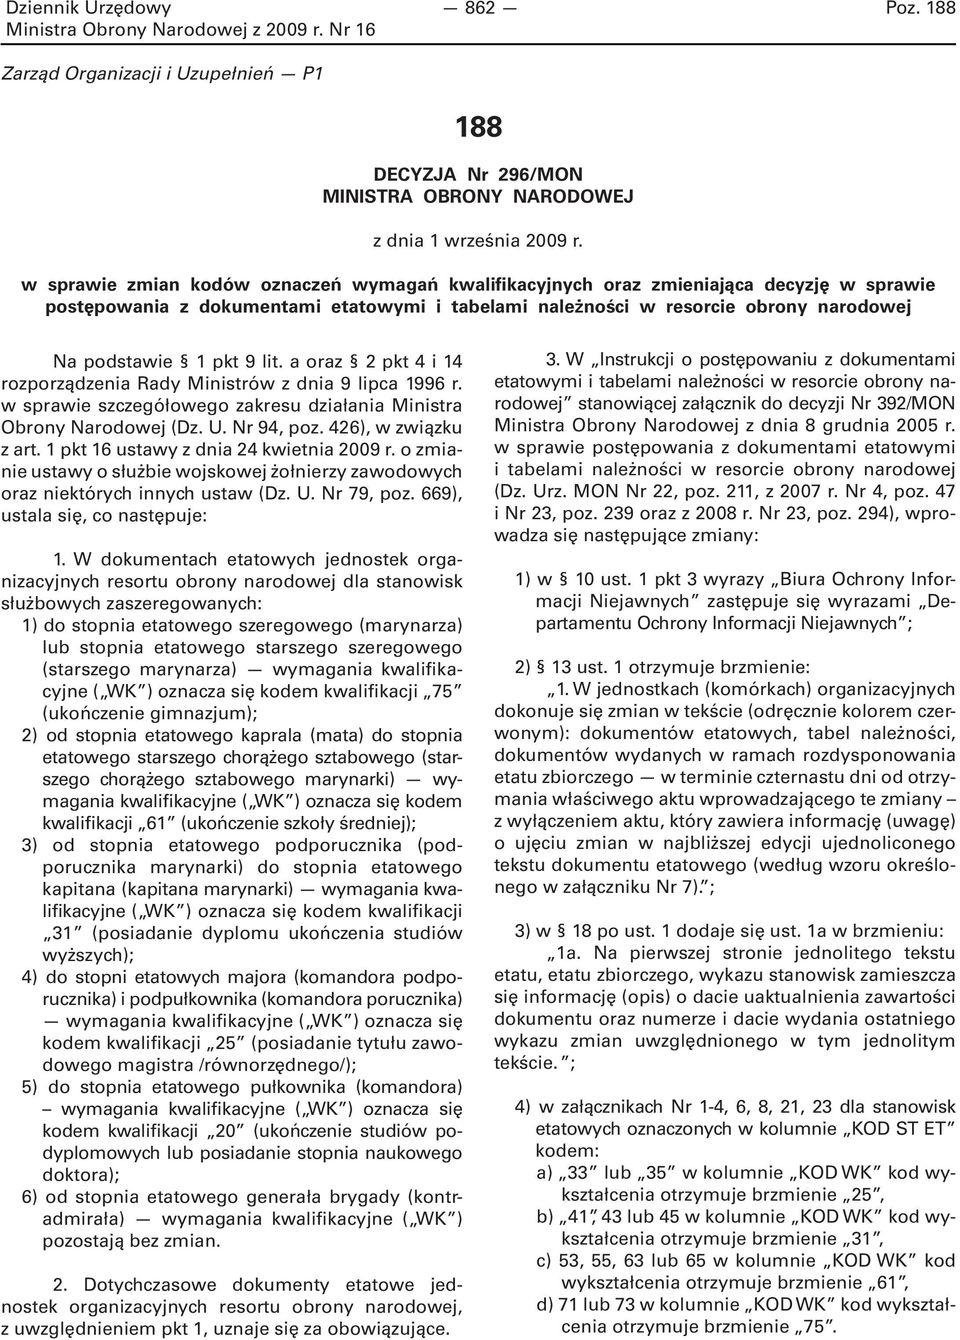 lit. a oraz 2 pkt 4 i 14 rozporządzenia Rady Ministrów z dnia 9 lipca 1996 r. w sprawie szczegółowego zakresu działania Ministra Obrony Narodowej (Dz. U. Nr 94, poz. 426), w związku z art.